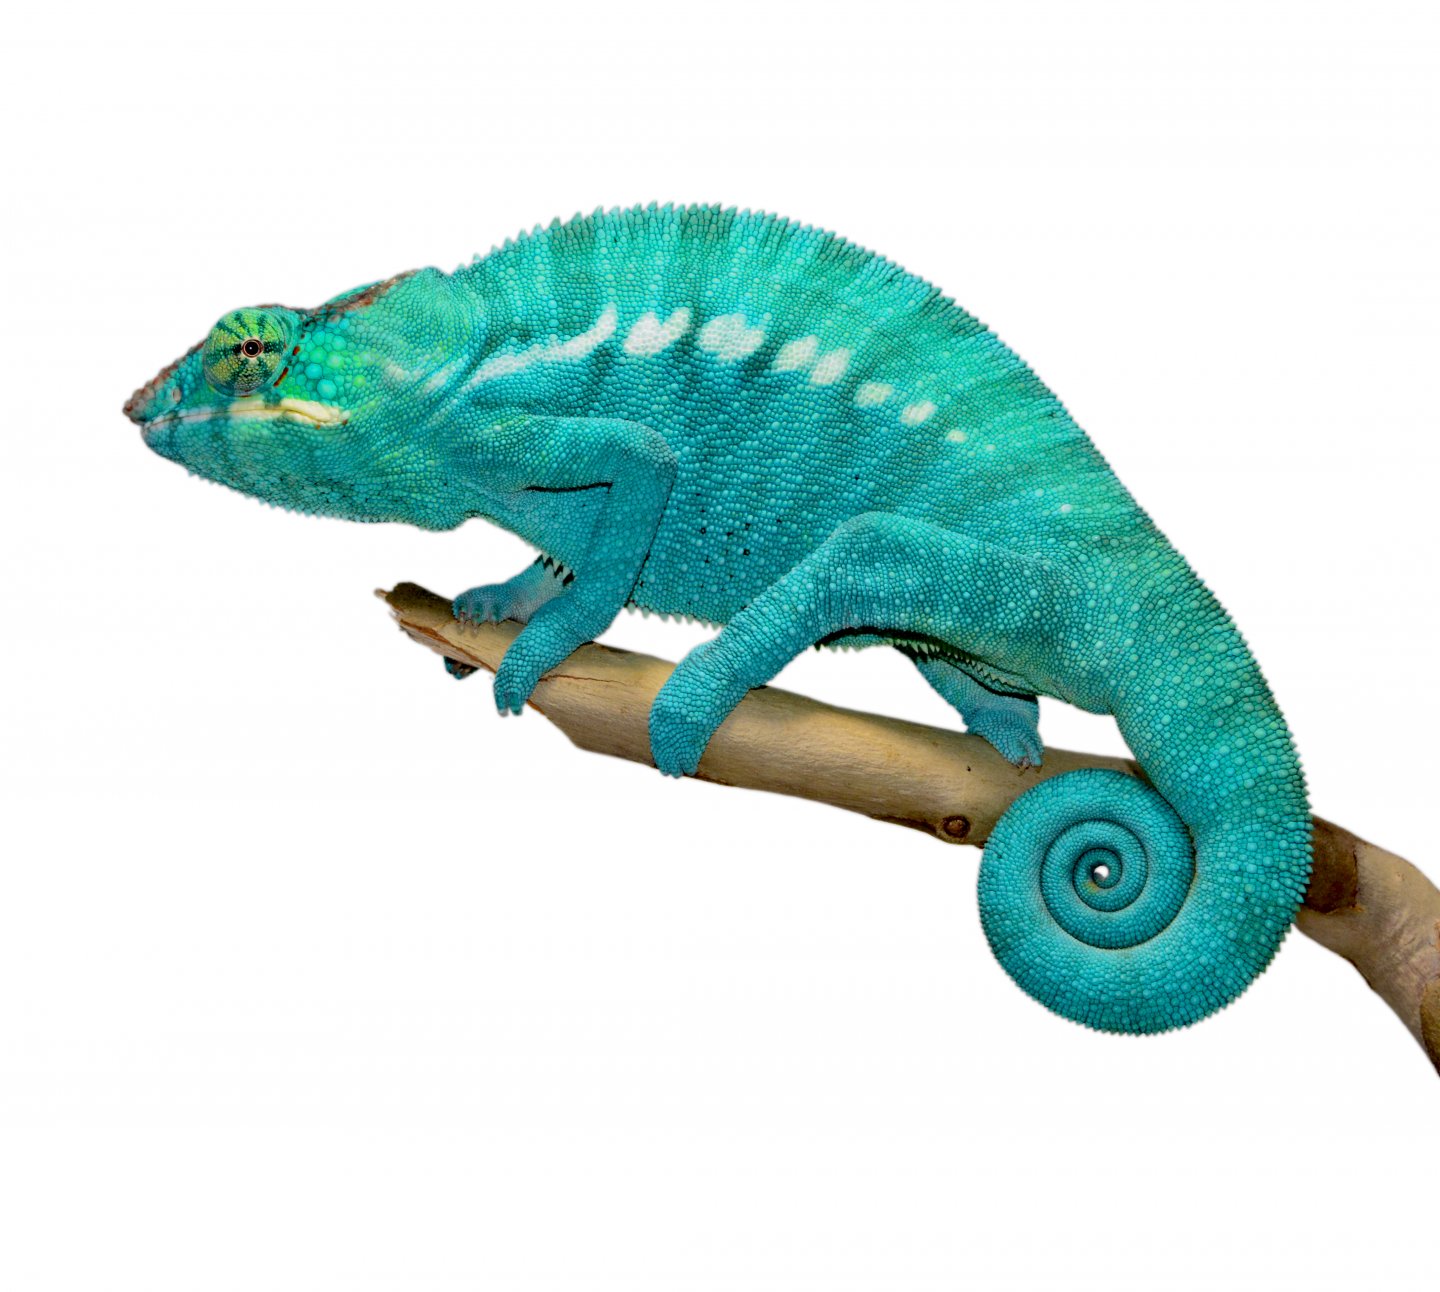 Azul Jr - Nosy Be - Canvas Chameleons (1).jpg